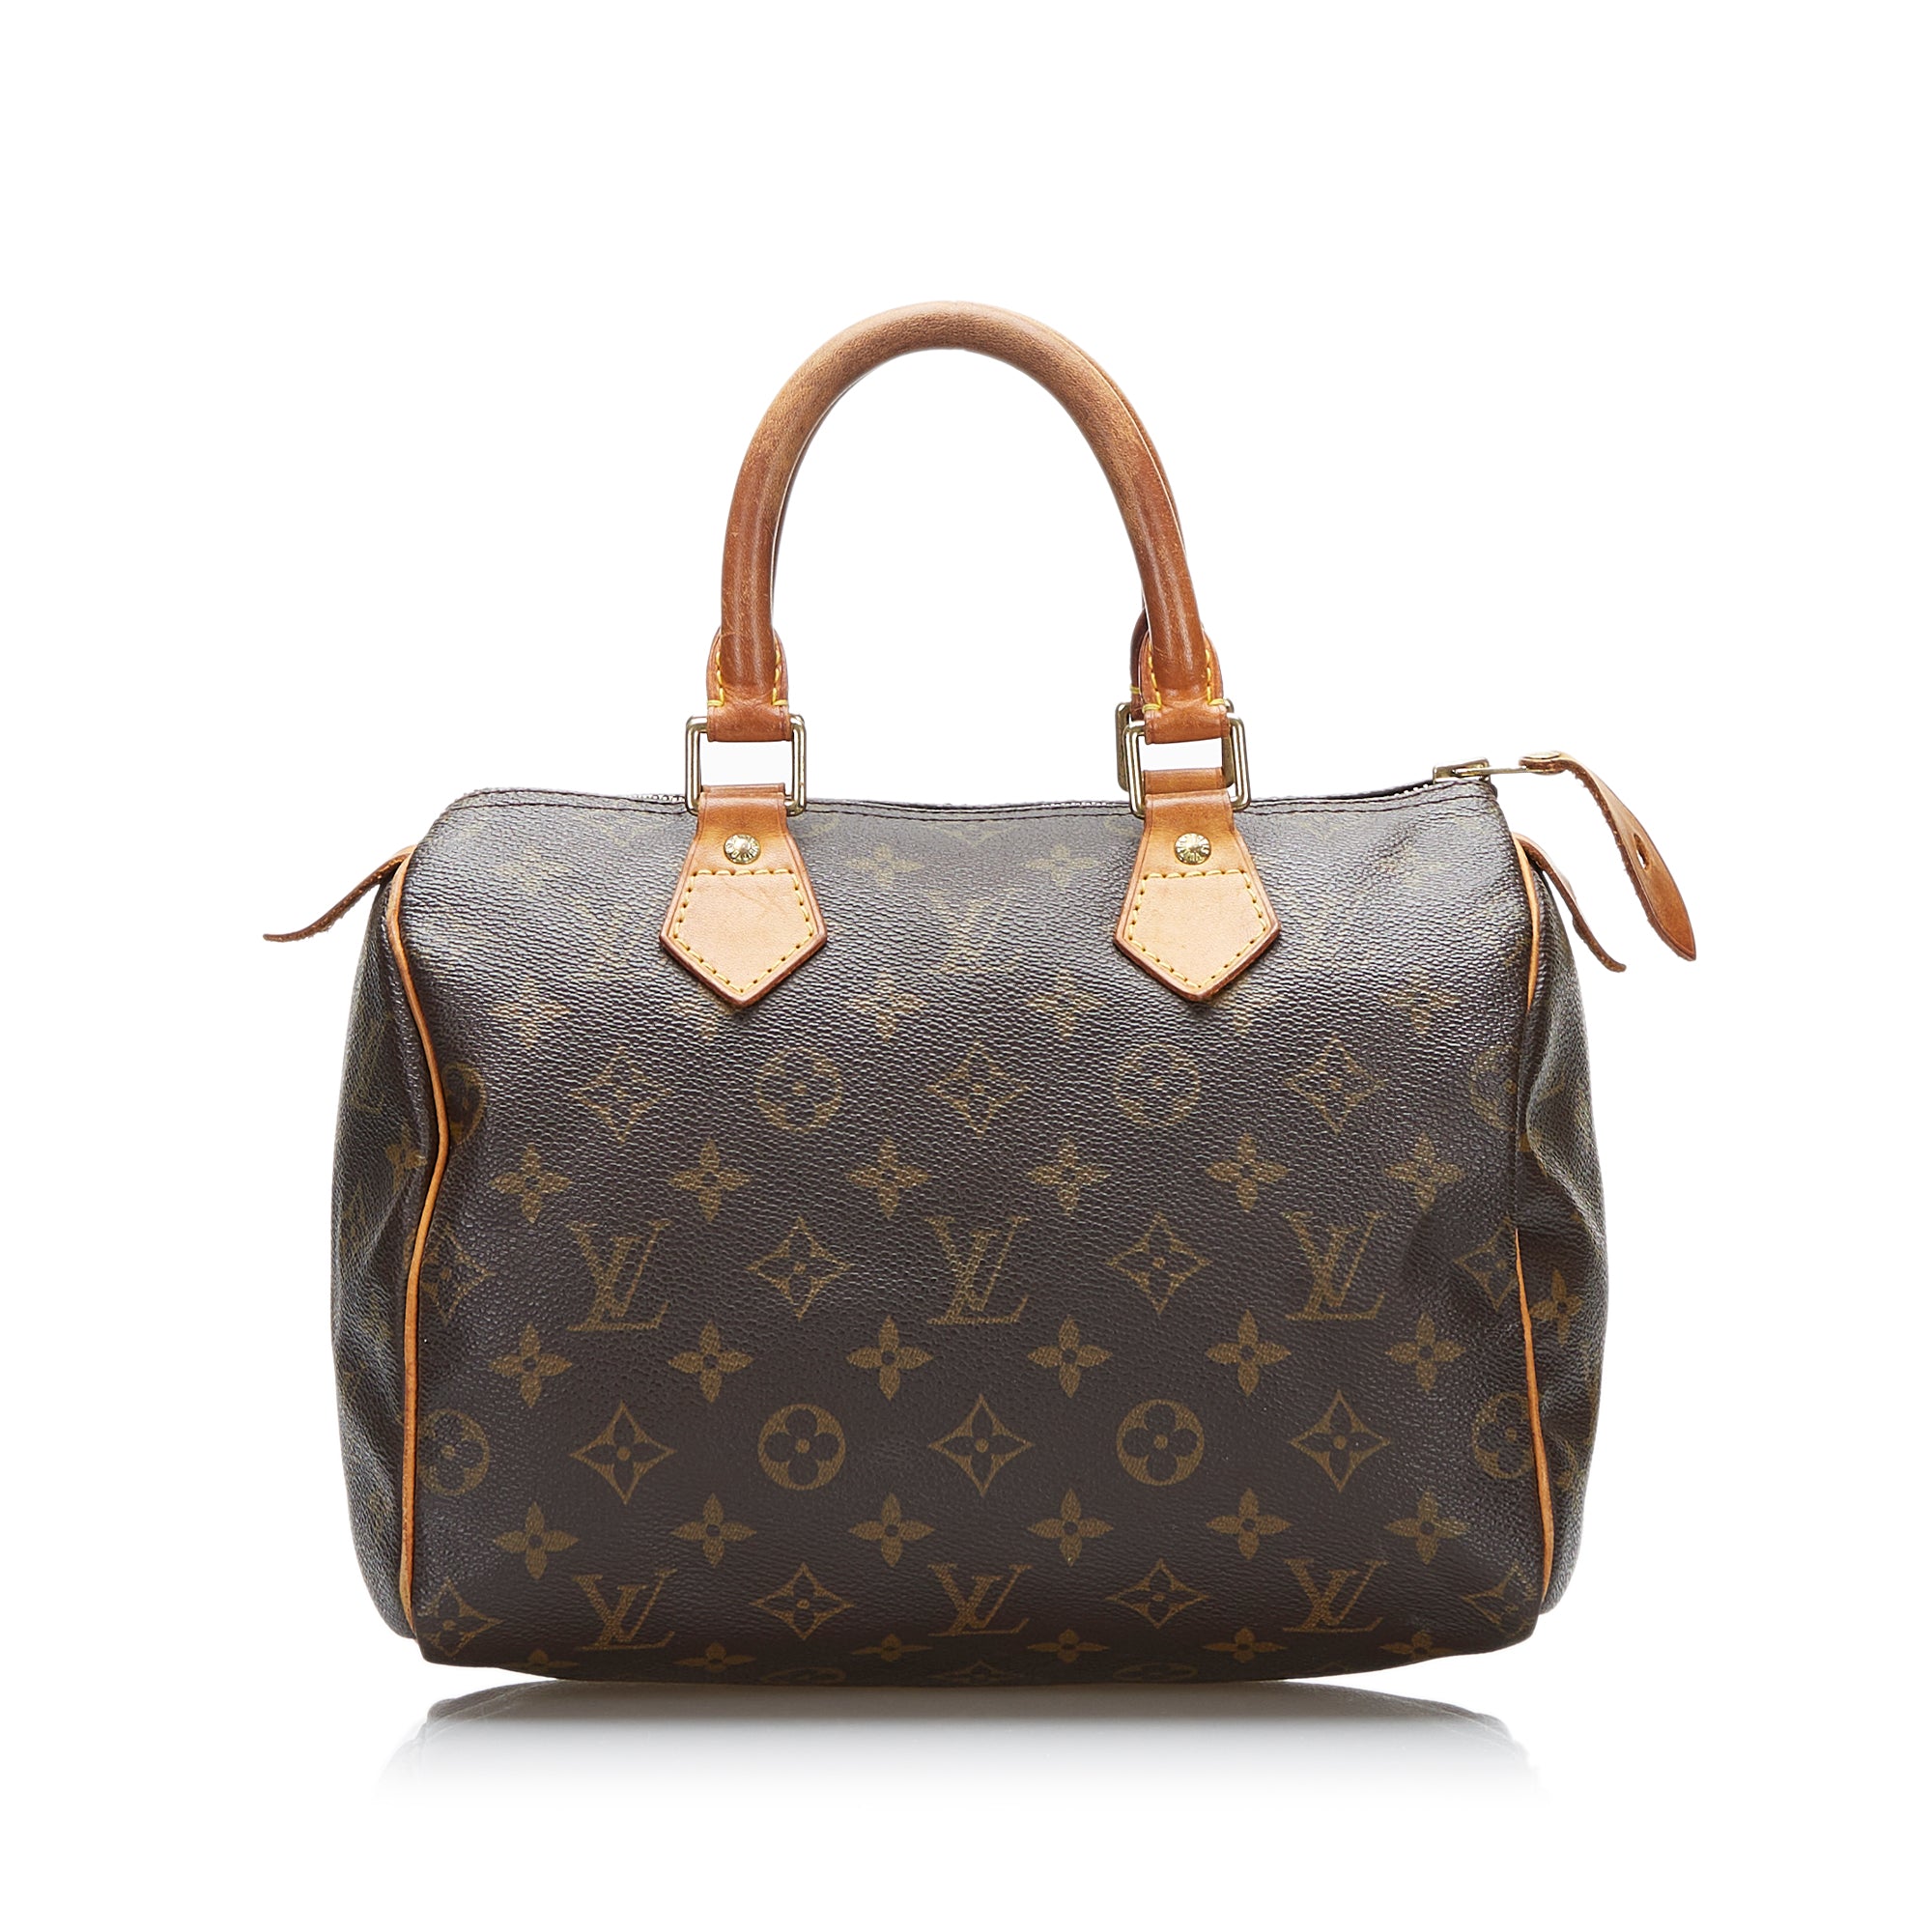 Louis Vuitton Monogram Speedy 25 Boston Bag